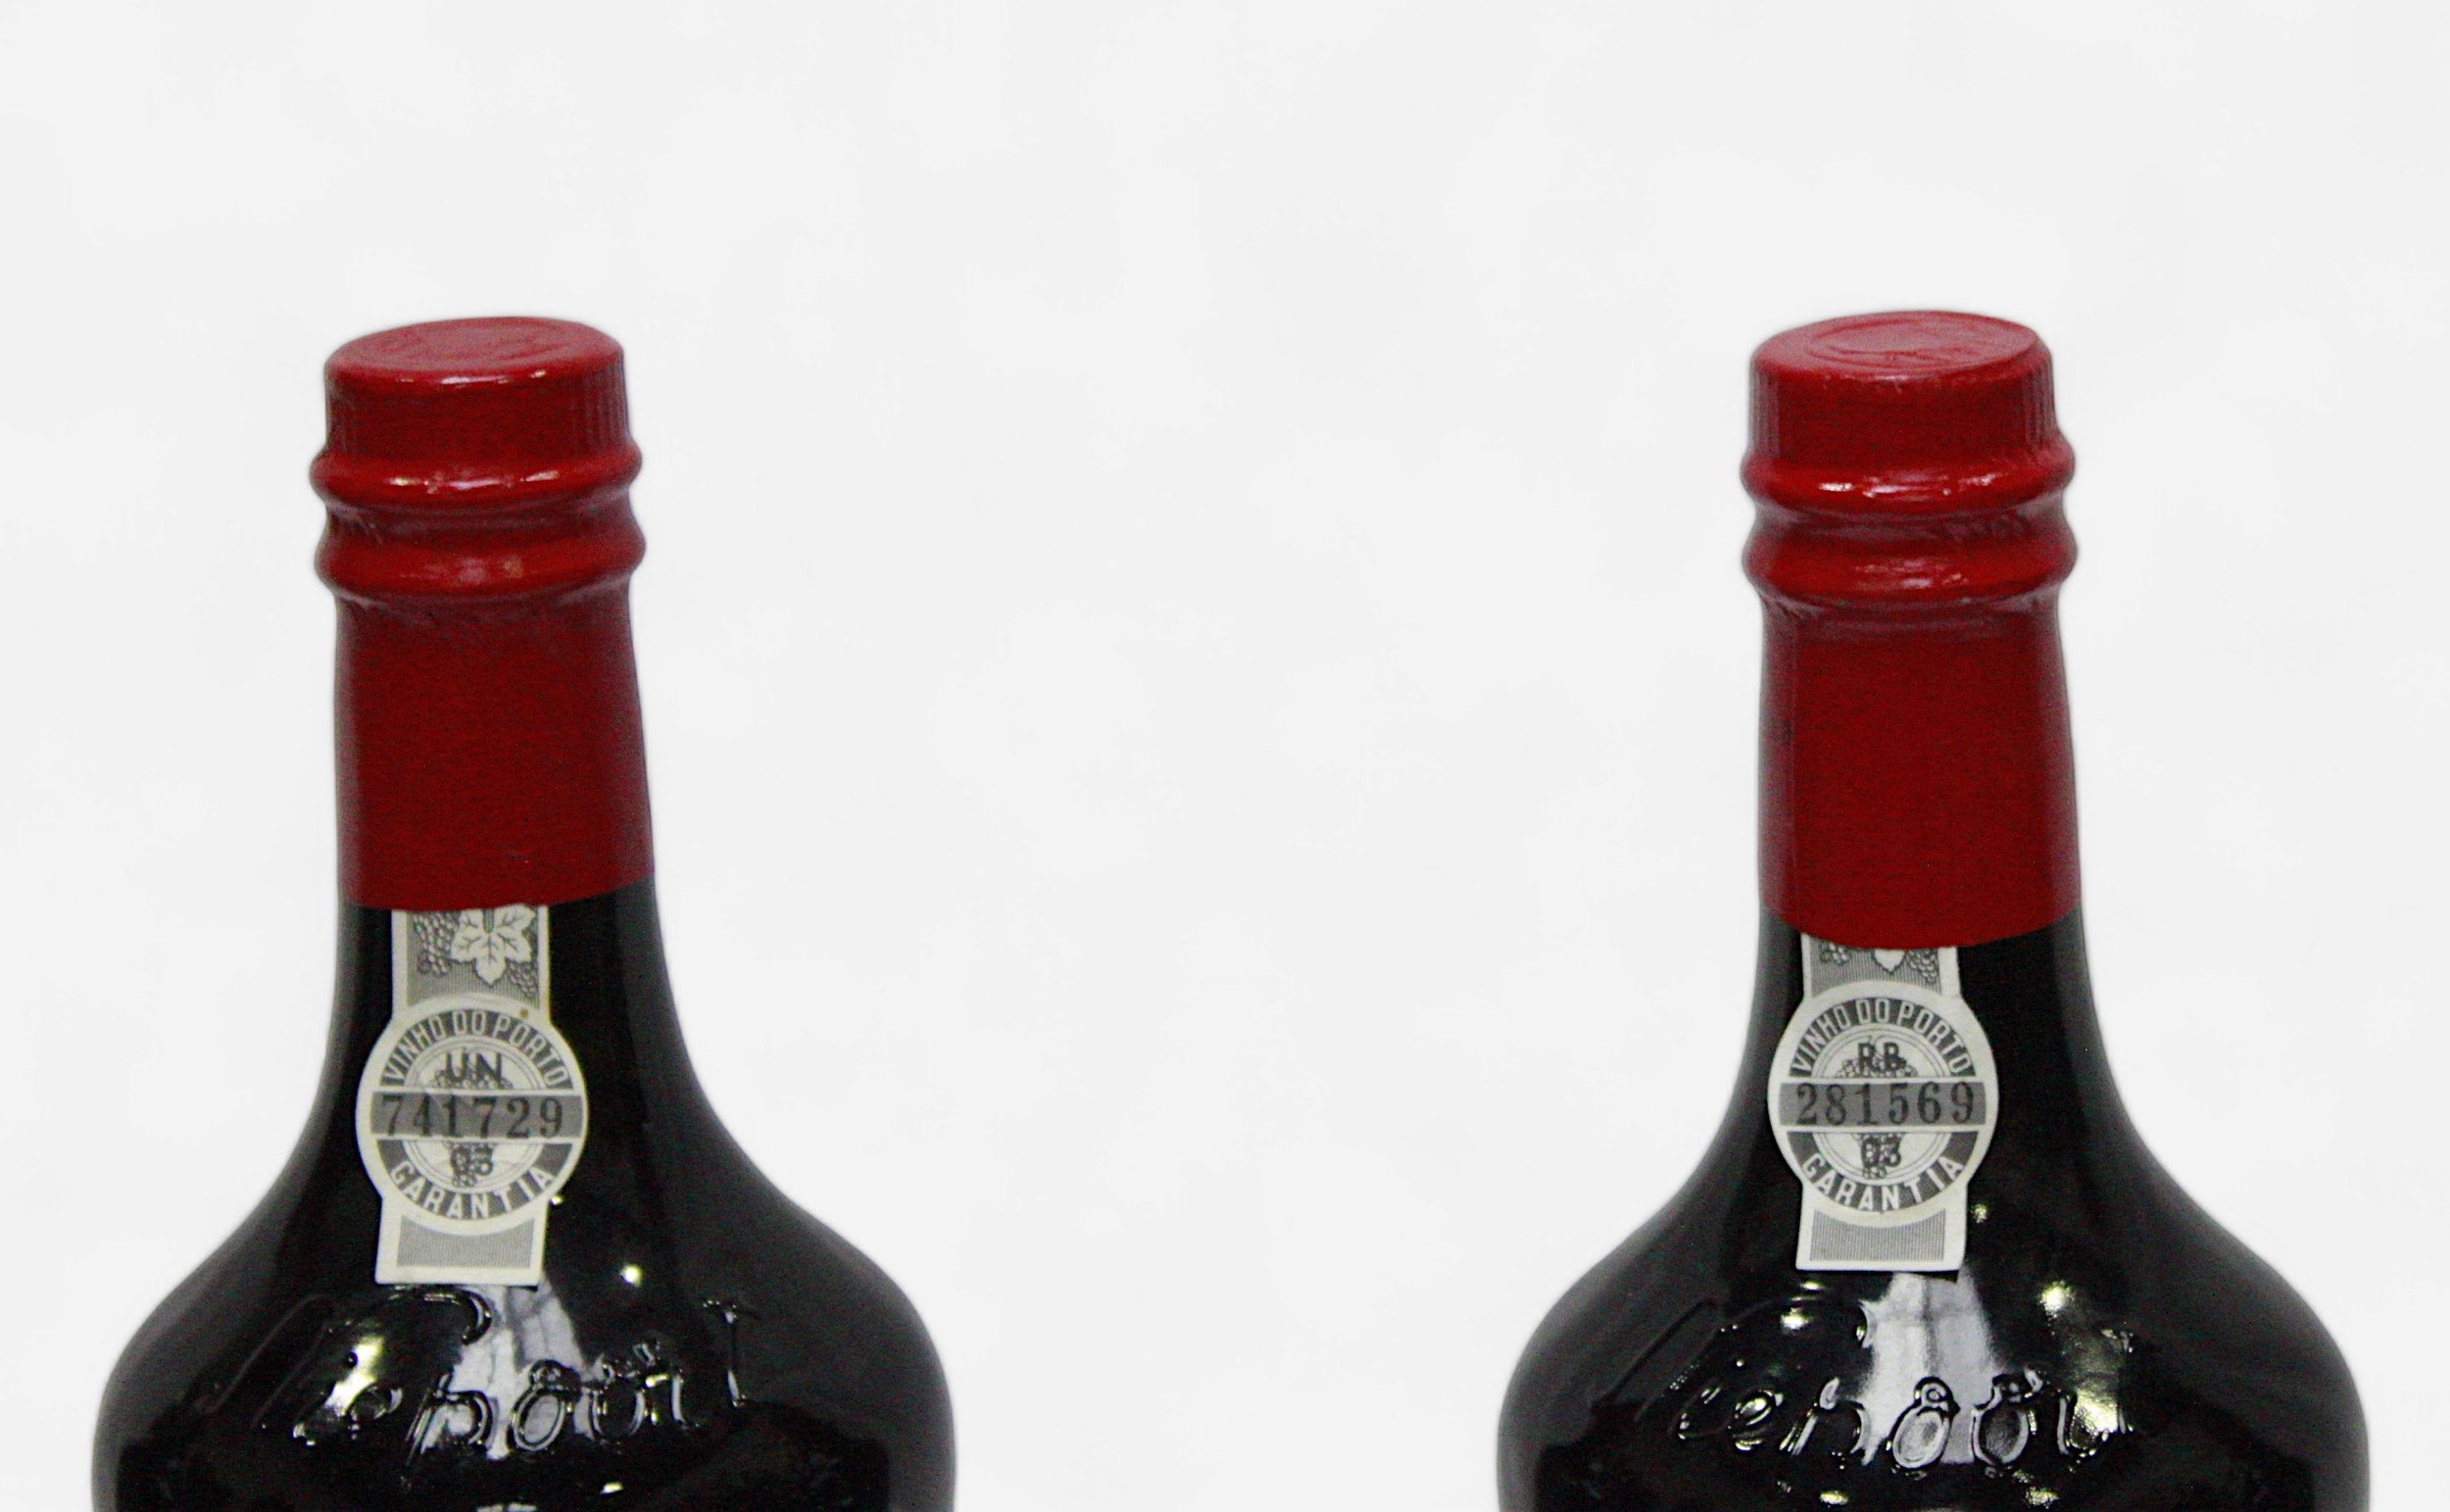 Four 750ml bottles of Porto Nieport Ruby port, Trafalgar 200 commemorative bottles, all unopened - Image 2 of 2